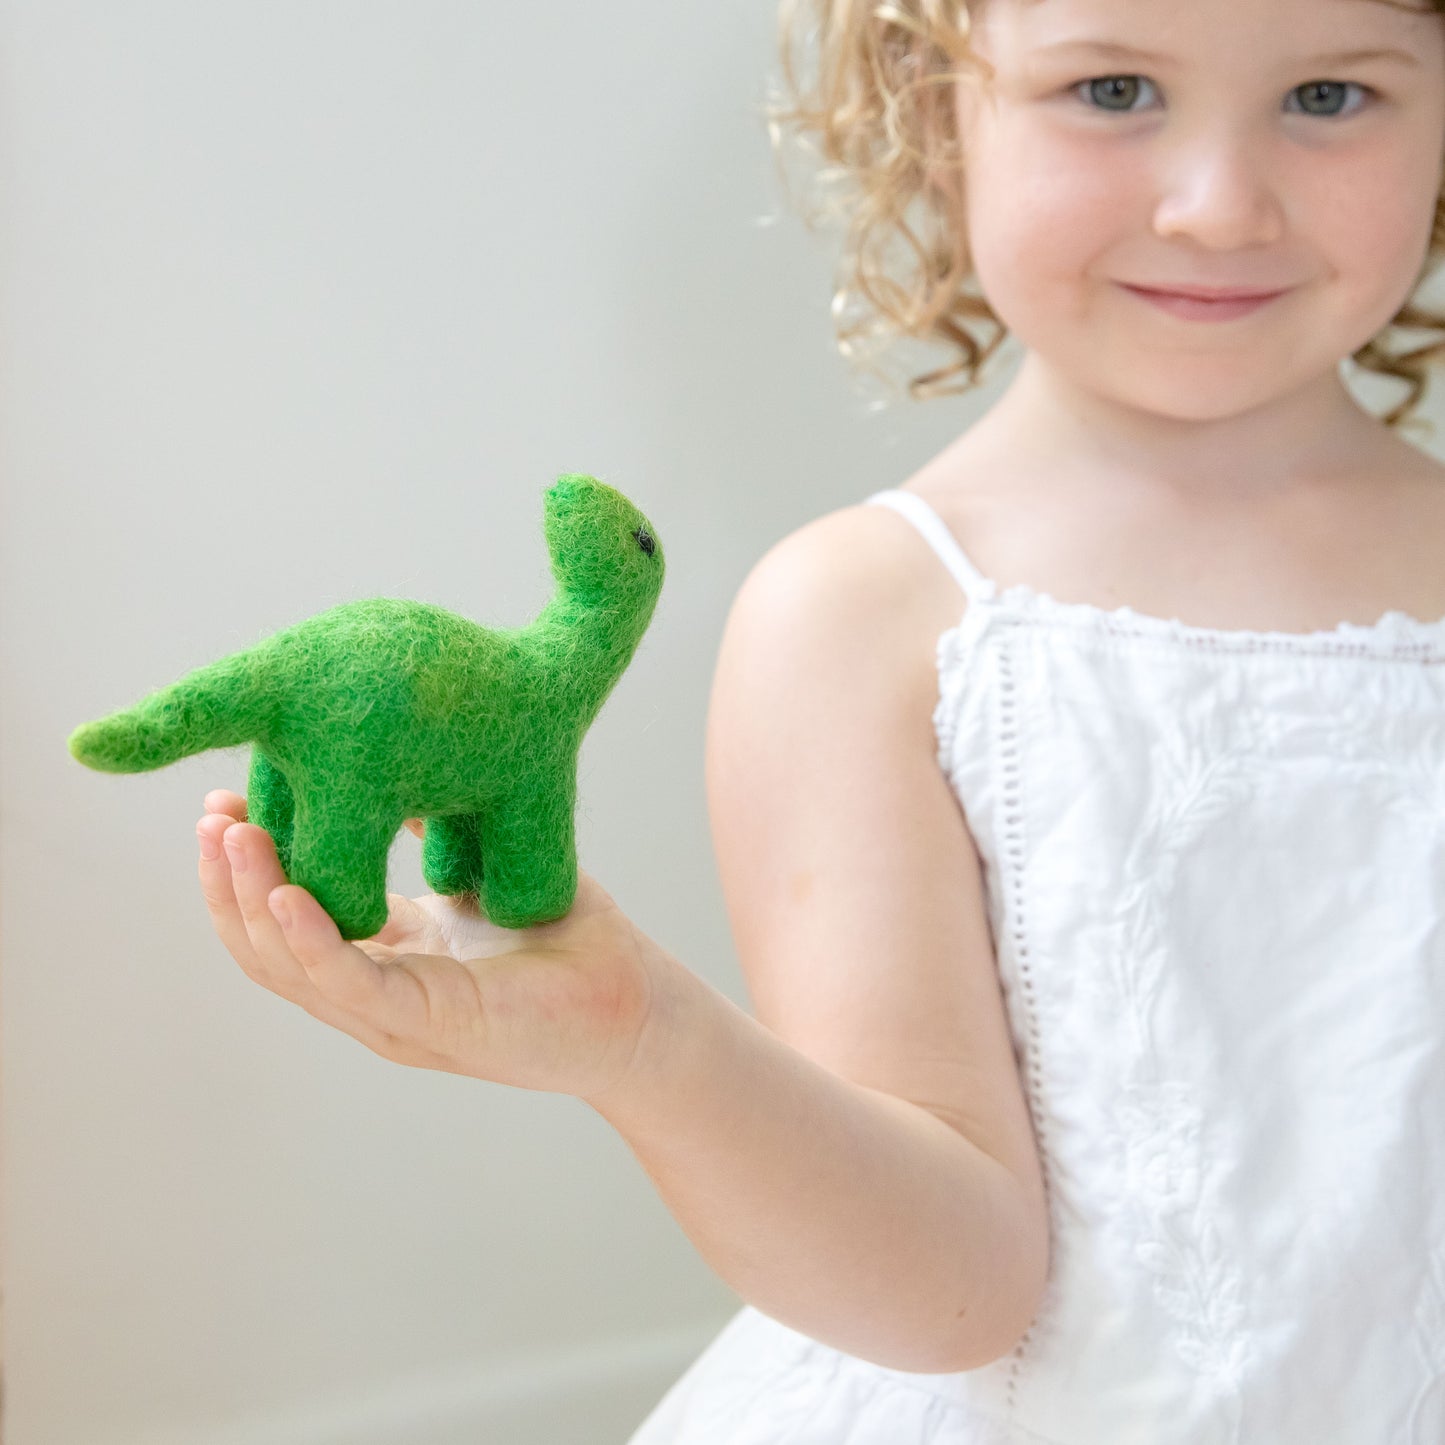 Girl holding mini green felt dinosaur